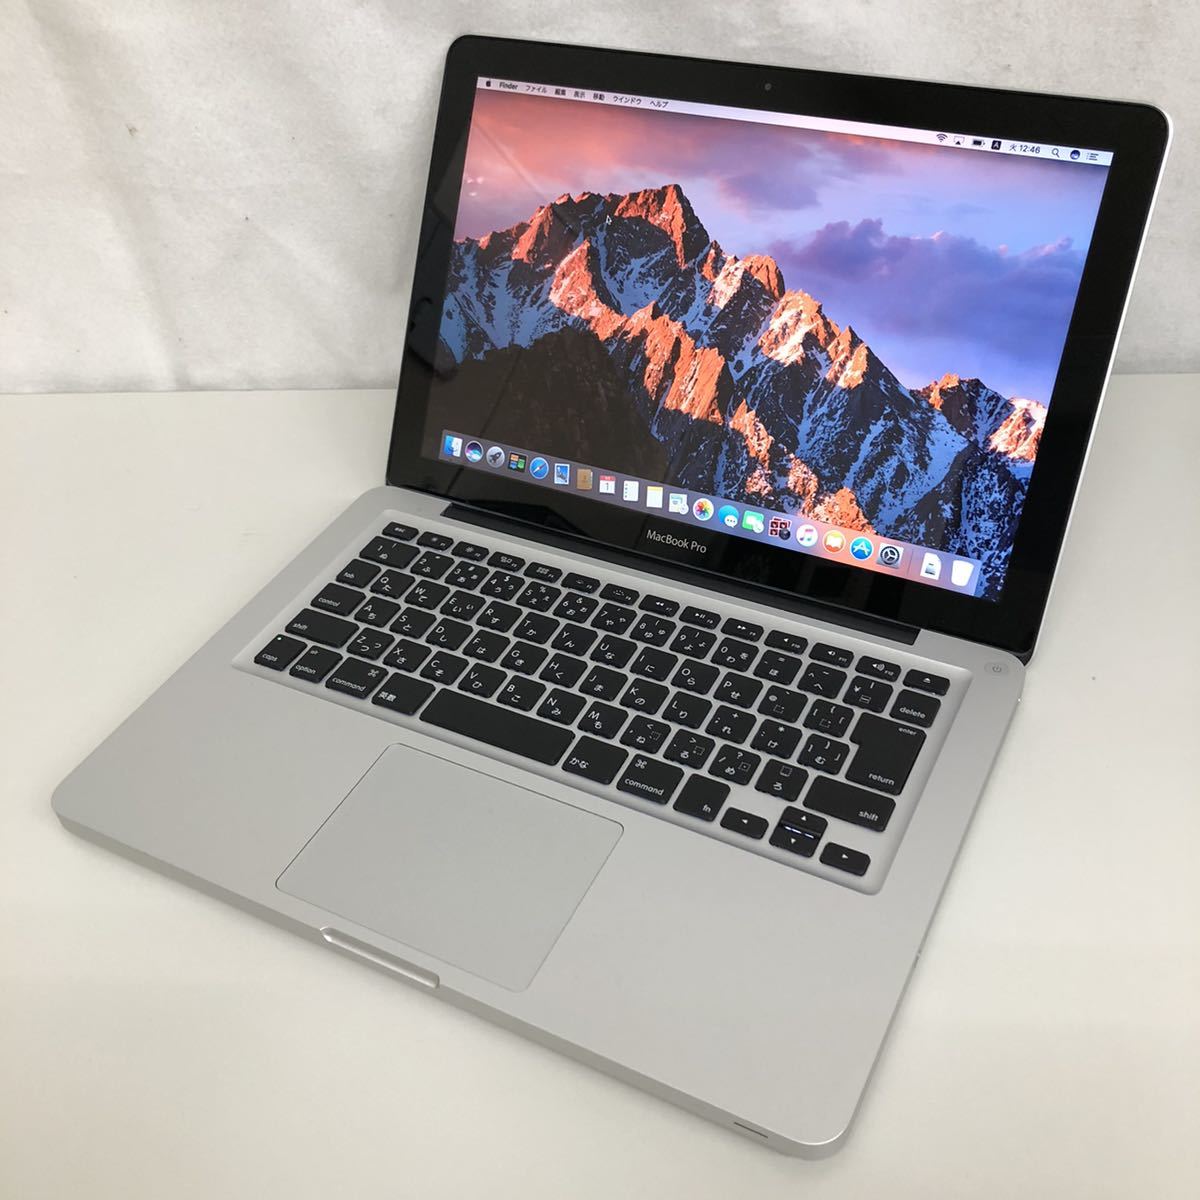 Apple MacBook Pro 13インチ Mid 2012 MD101J/A カスタム Sierra/Core 